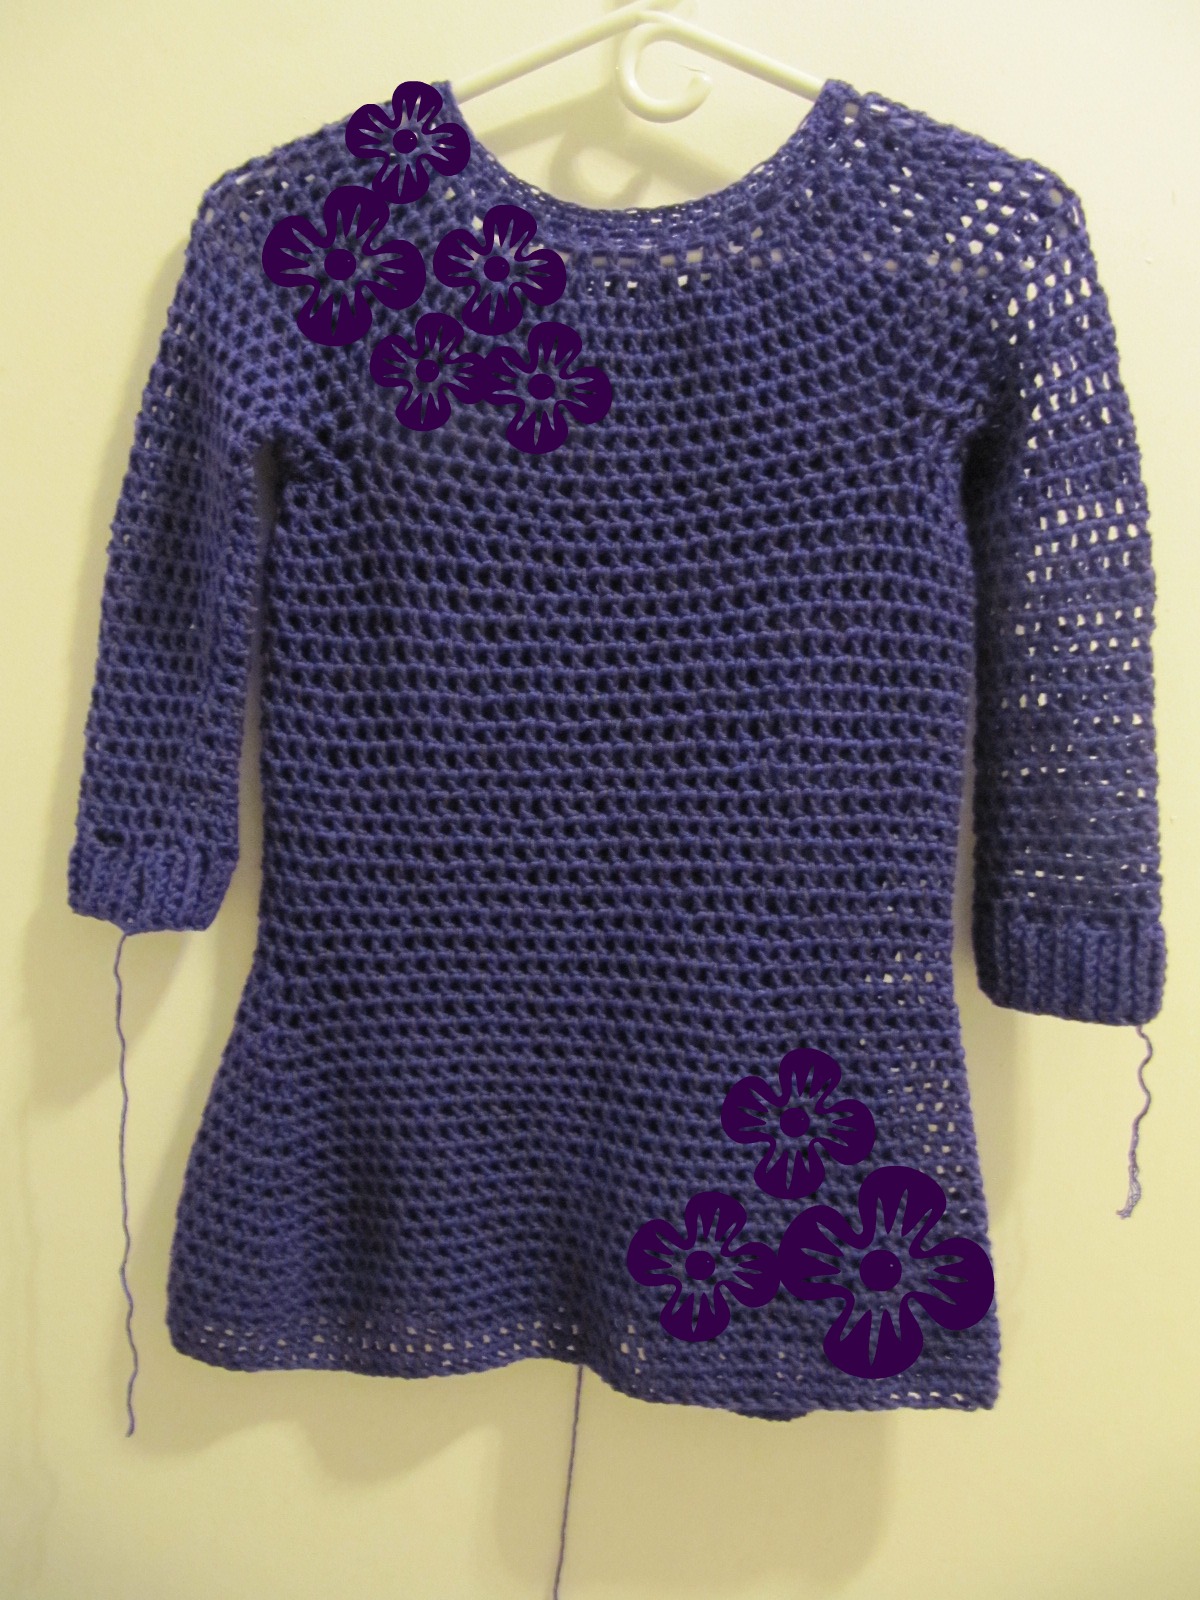 TeaBeans: Crochet Sweater Dress!